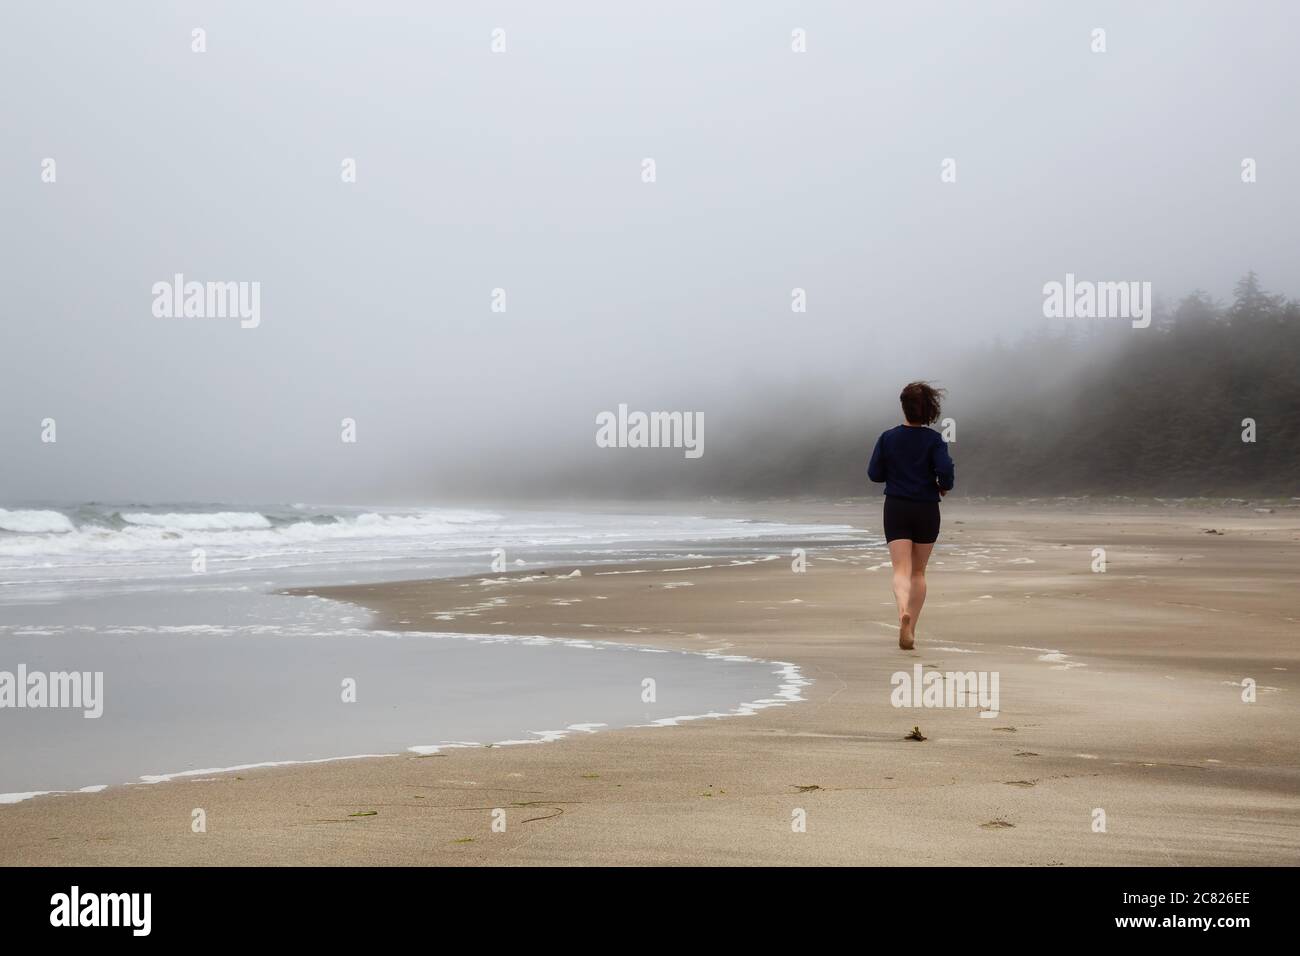 Athlétique caucasienne fille courir sur une plage de sable près de la côte de l'océan Pacifique Banque D'Images